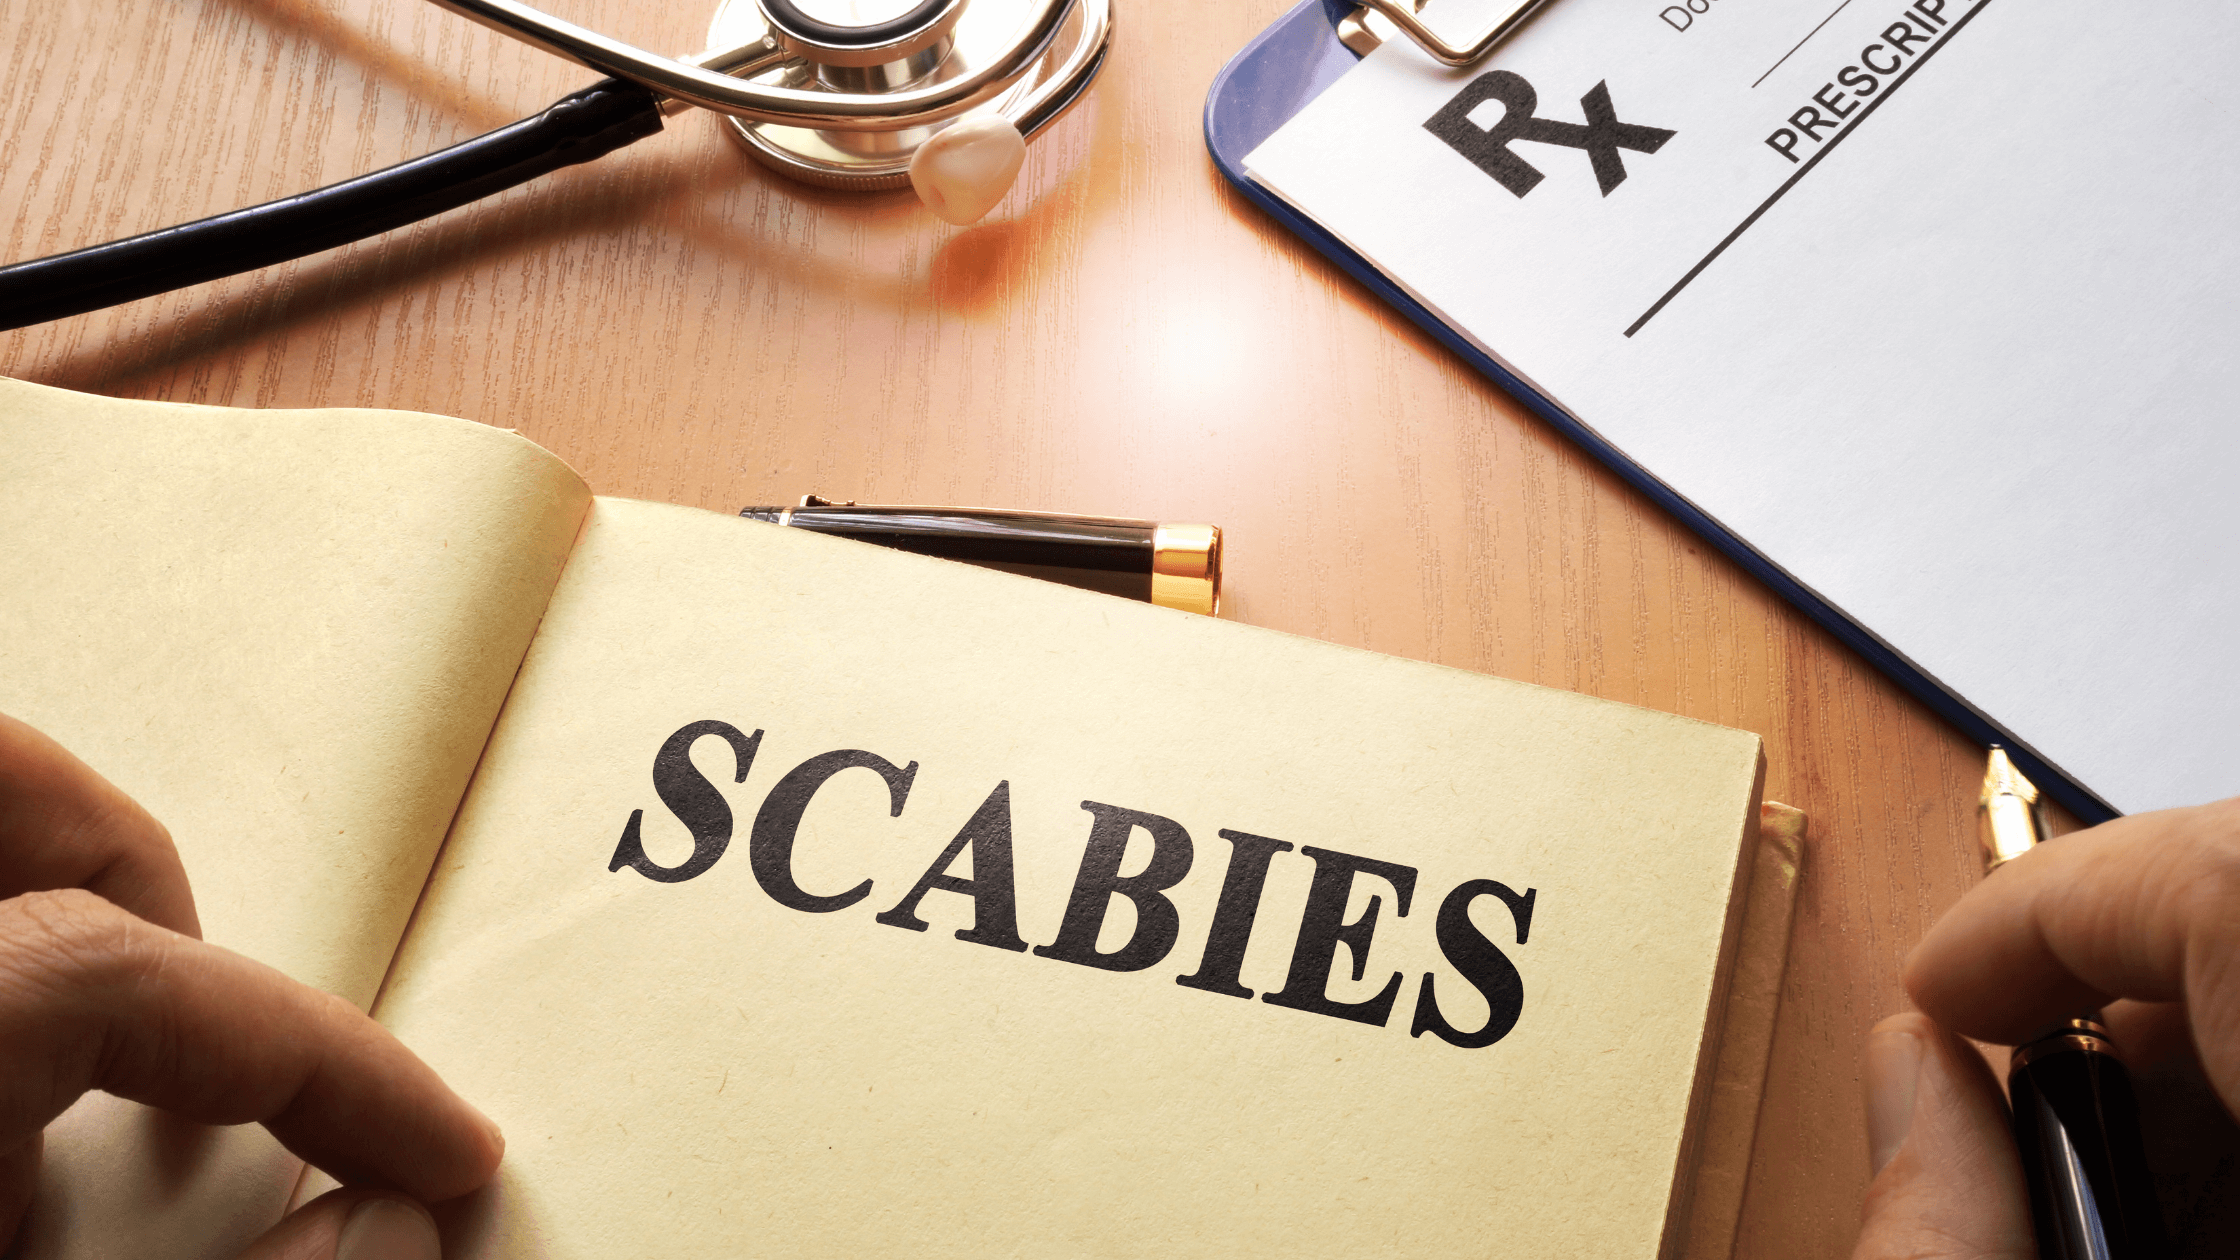 Scabies on Penis - Symptoms & Treatment | Man Matters